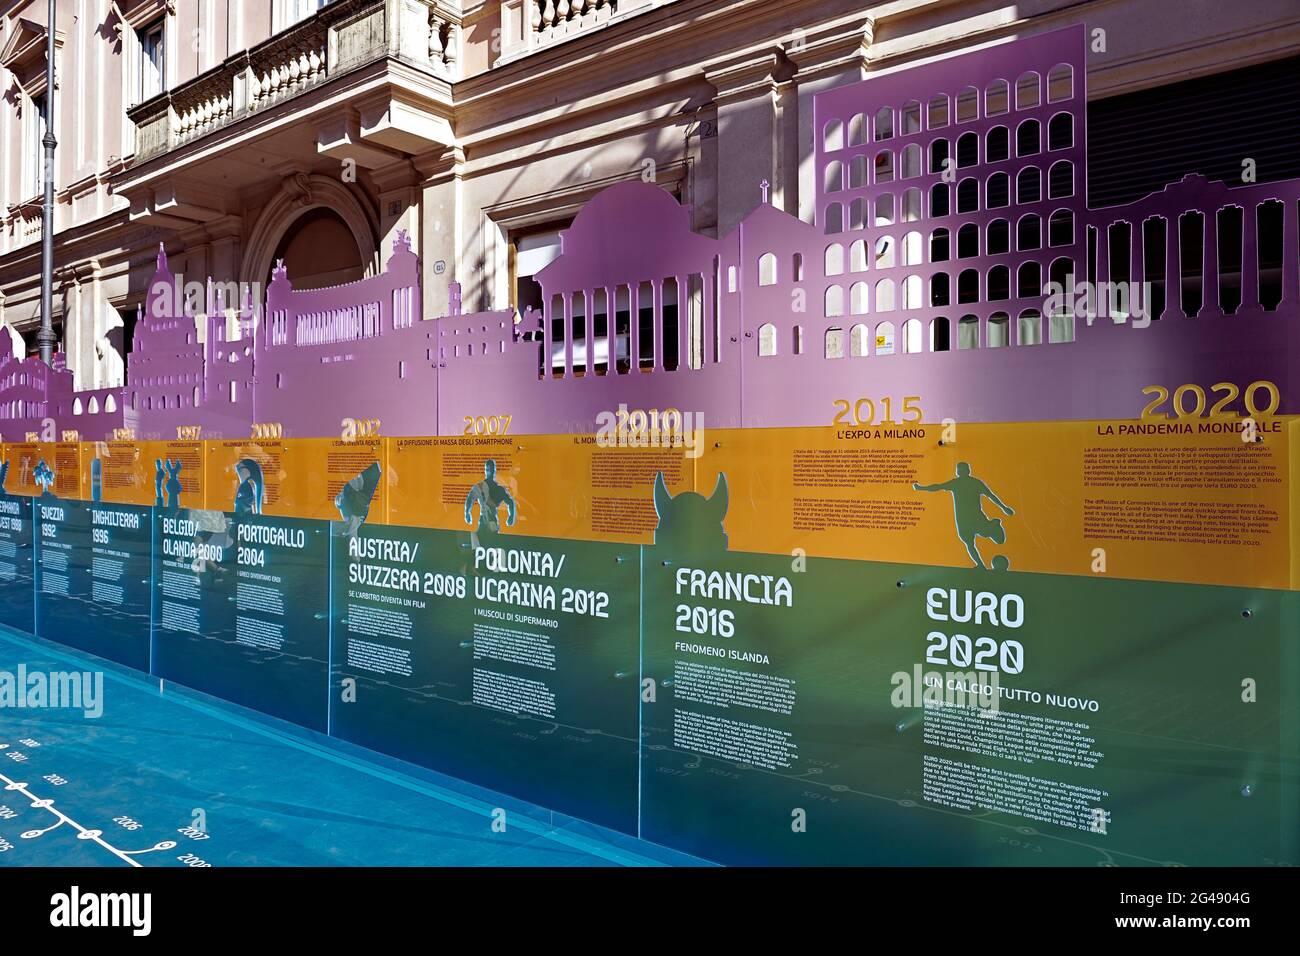 Uefa Champions League Euro 2020 Europameisterschaften. Fan Zone Installation auf der Piazza San Lorenzo auf dem Lucina Platz. Rom Italien Europa. 2021 Stockfoto